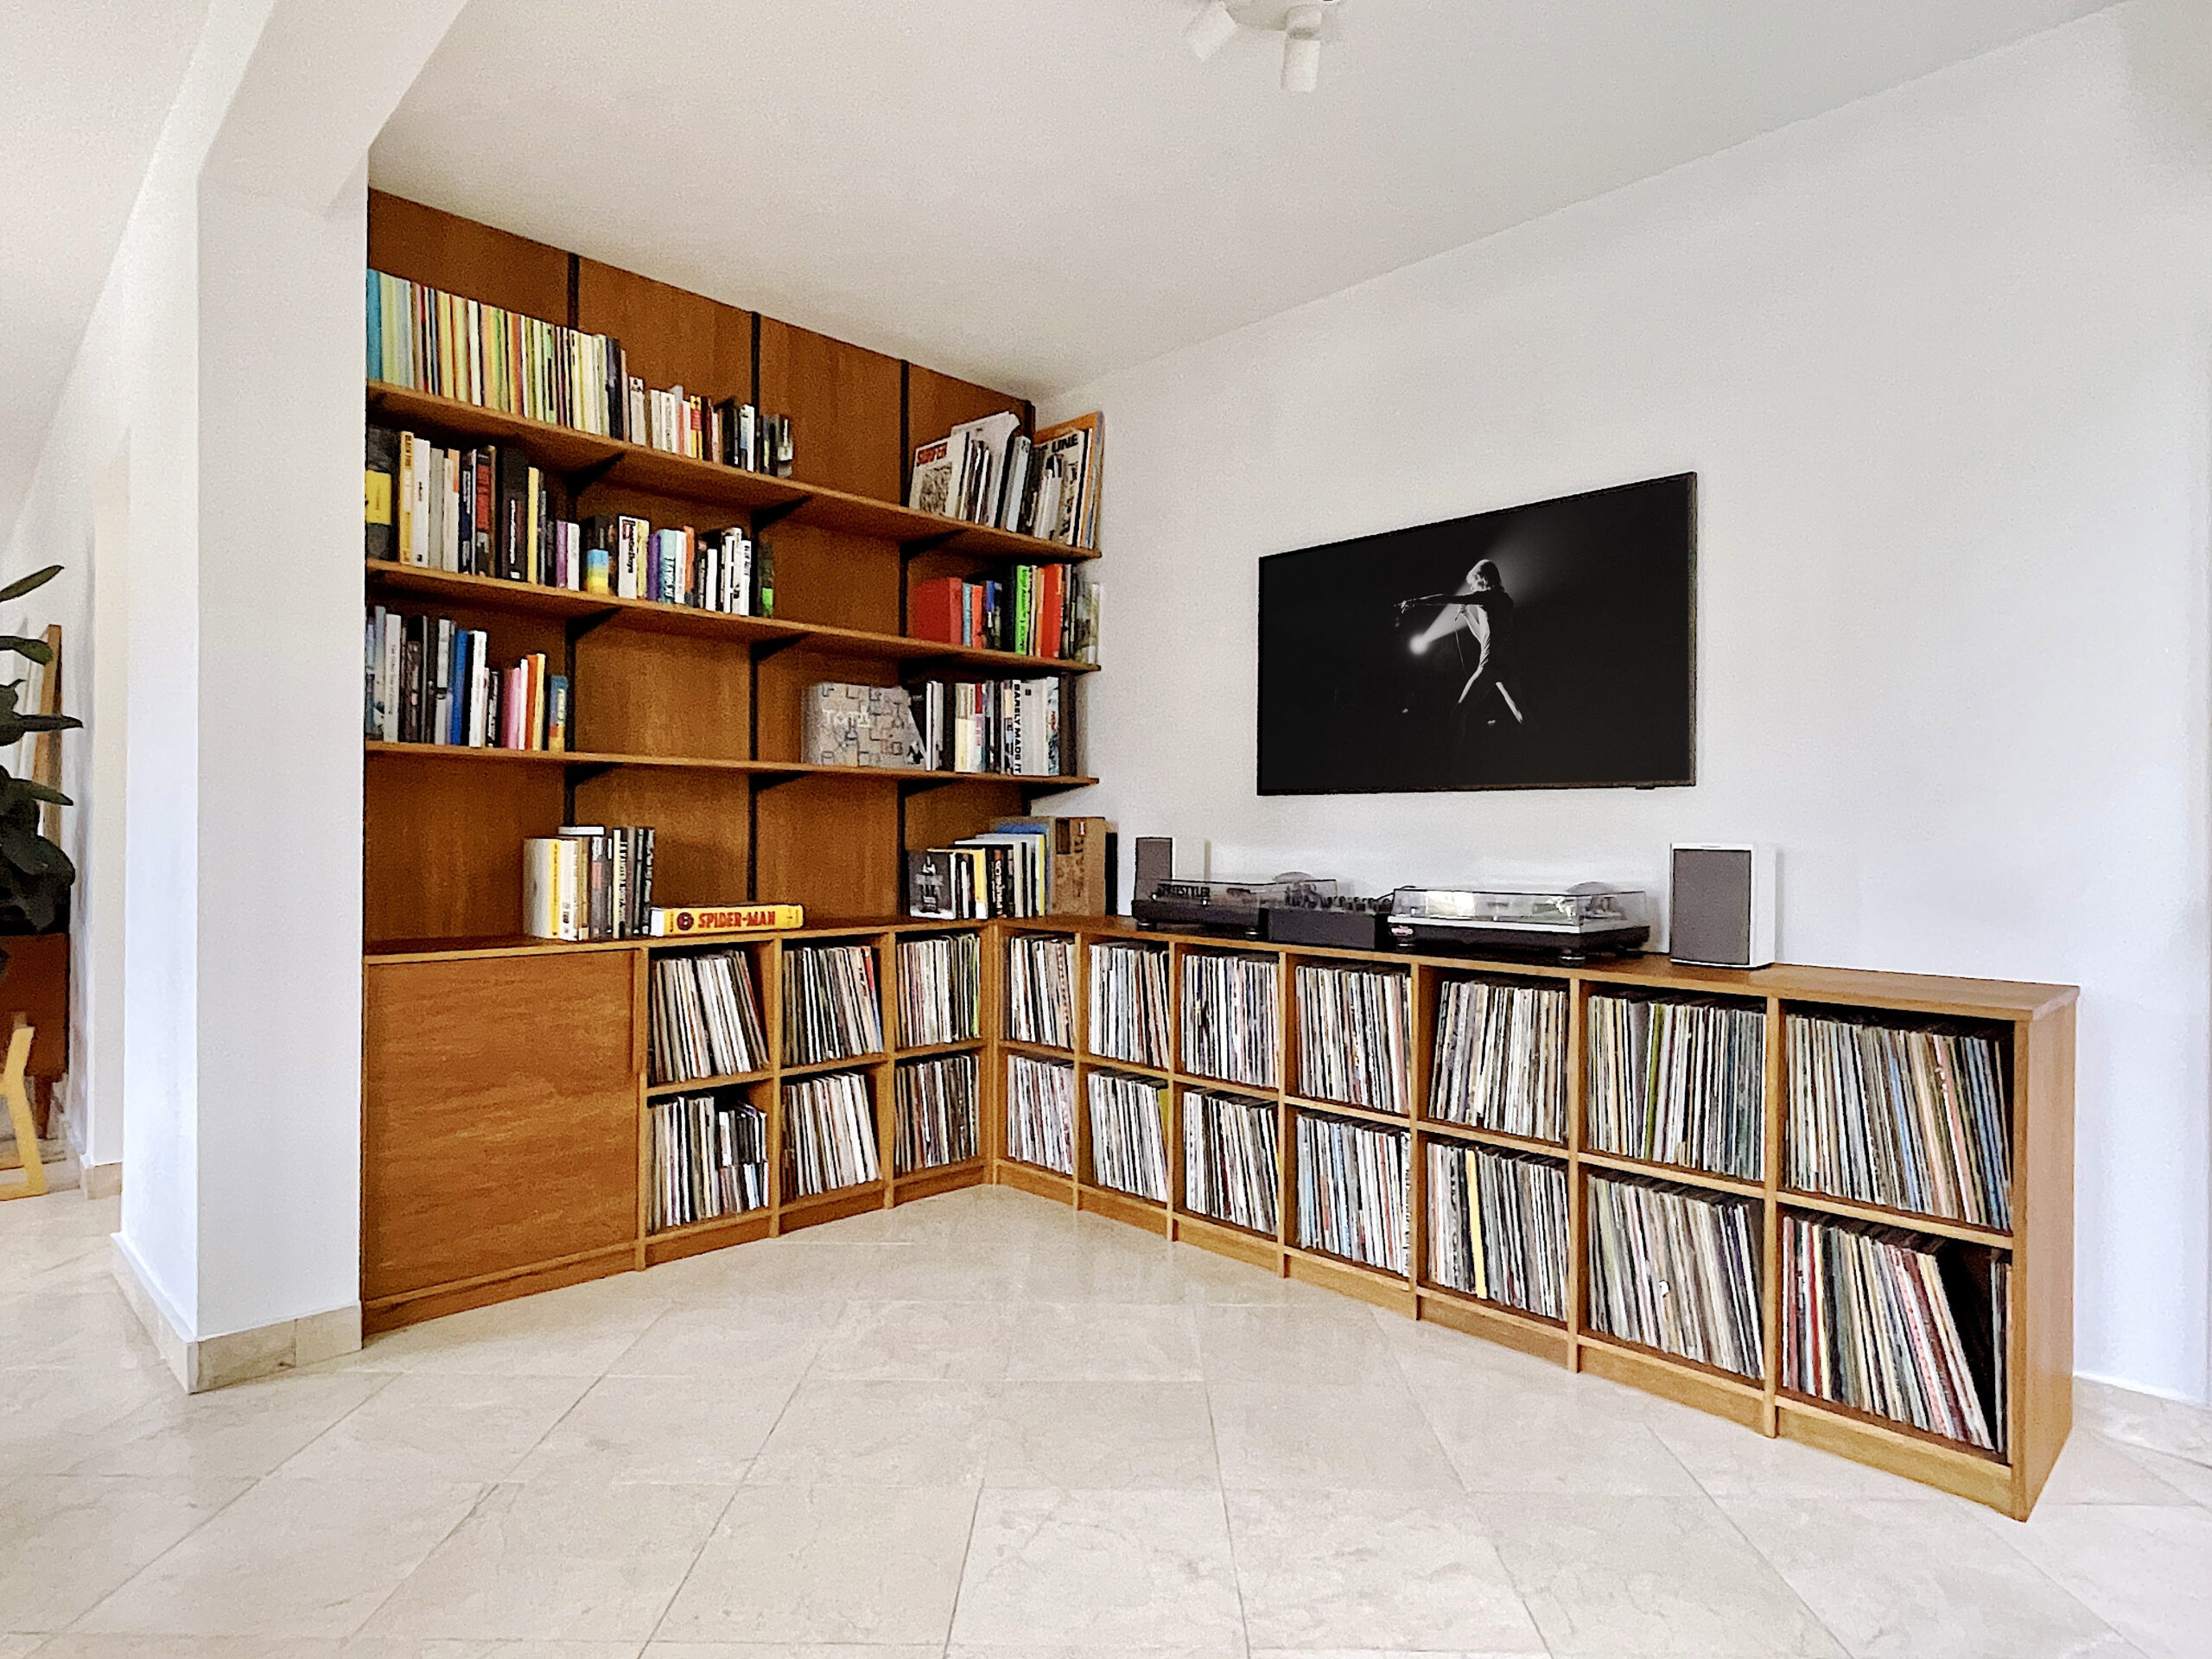 bibliothèque et rangements à vinyl sur mesure en bois à Seignosse, landes pays basque